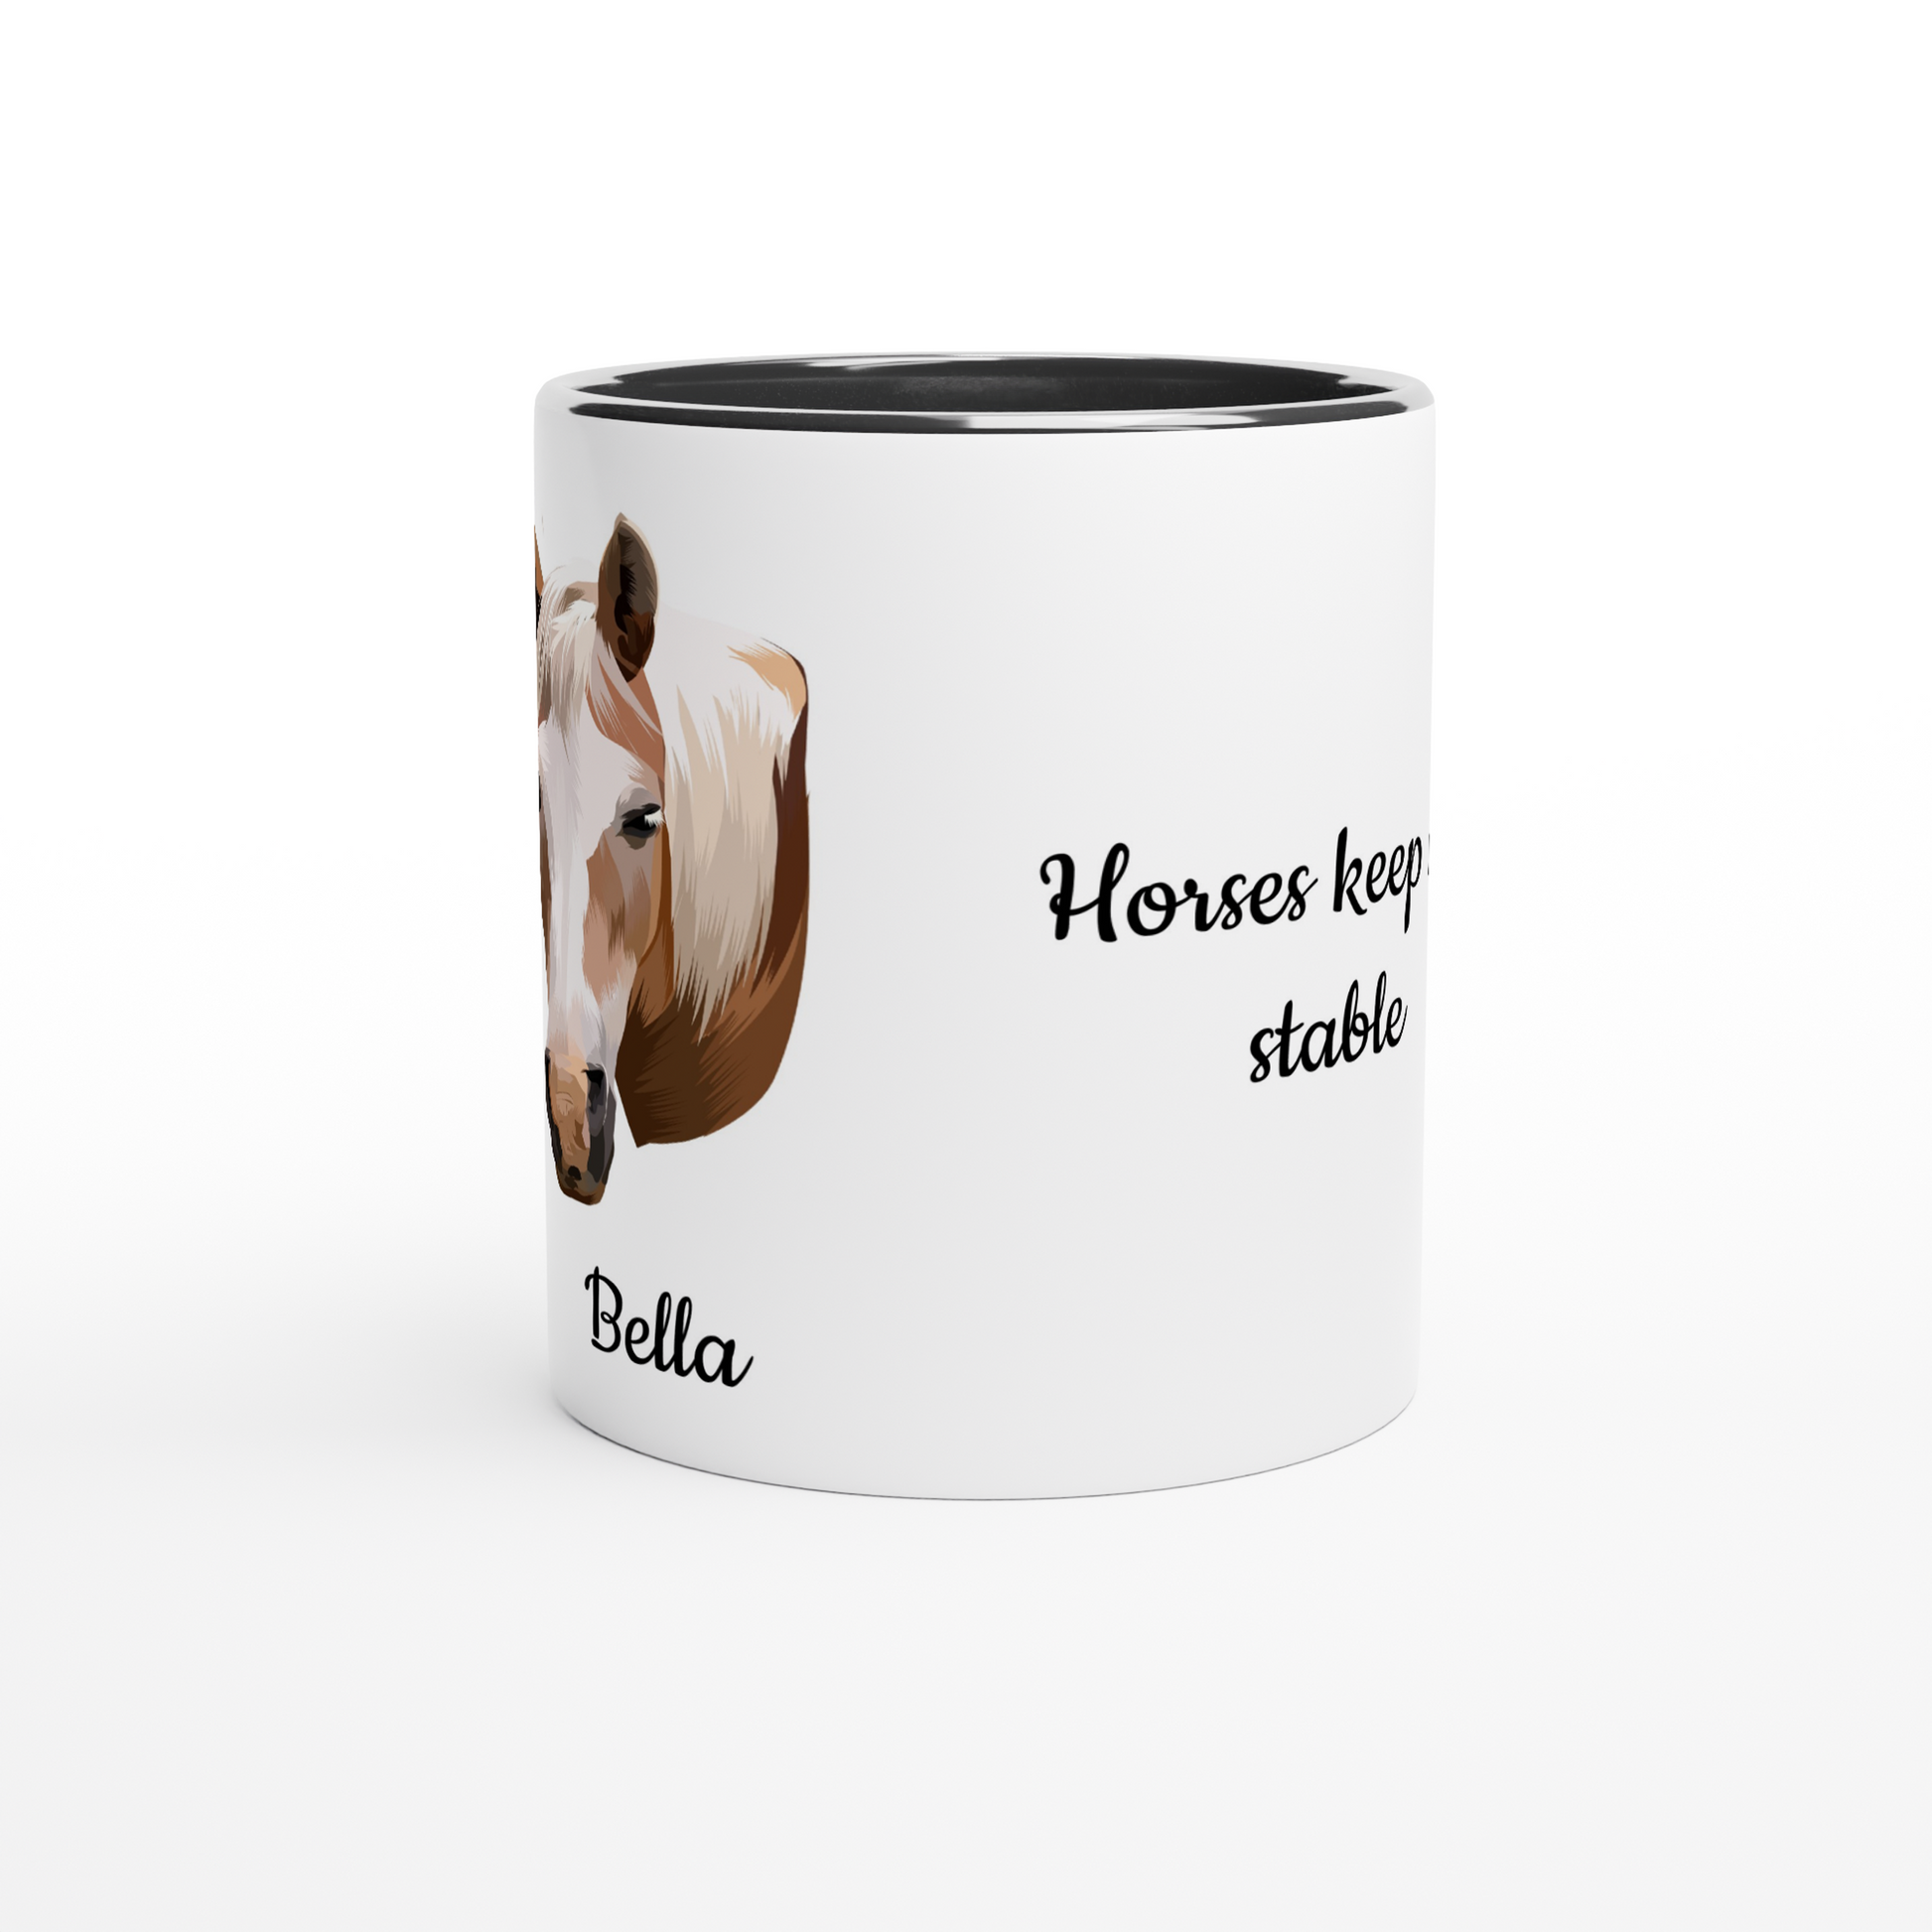 Hand Drawn Horse || 11oz Ceramic Mug with Color  TruPaint  Hand Drawn & Personalized; Hand drawn & personalized with your horse